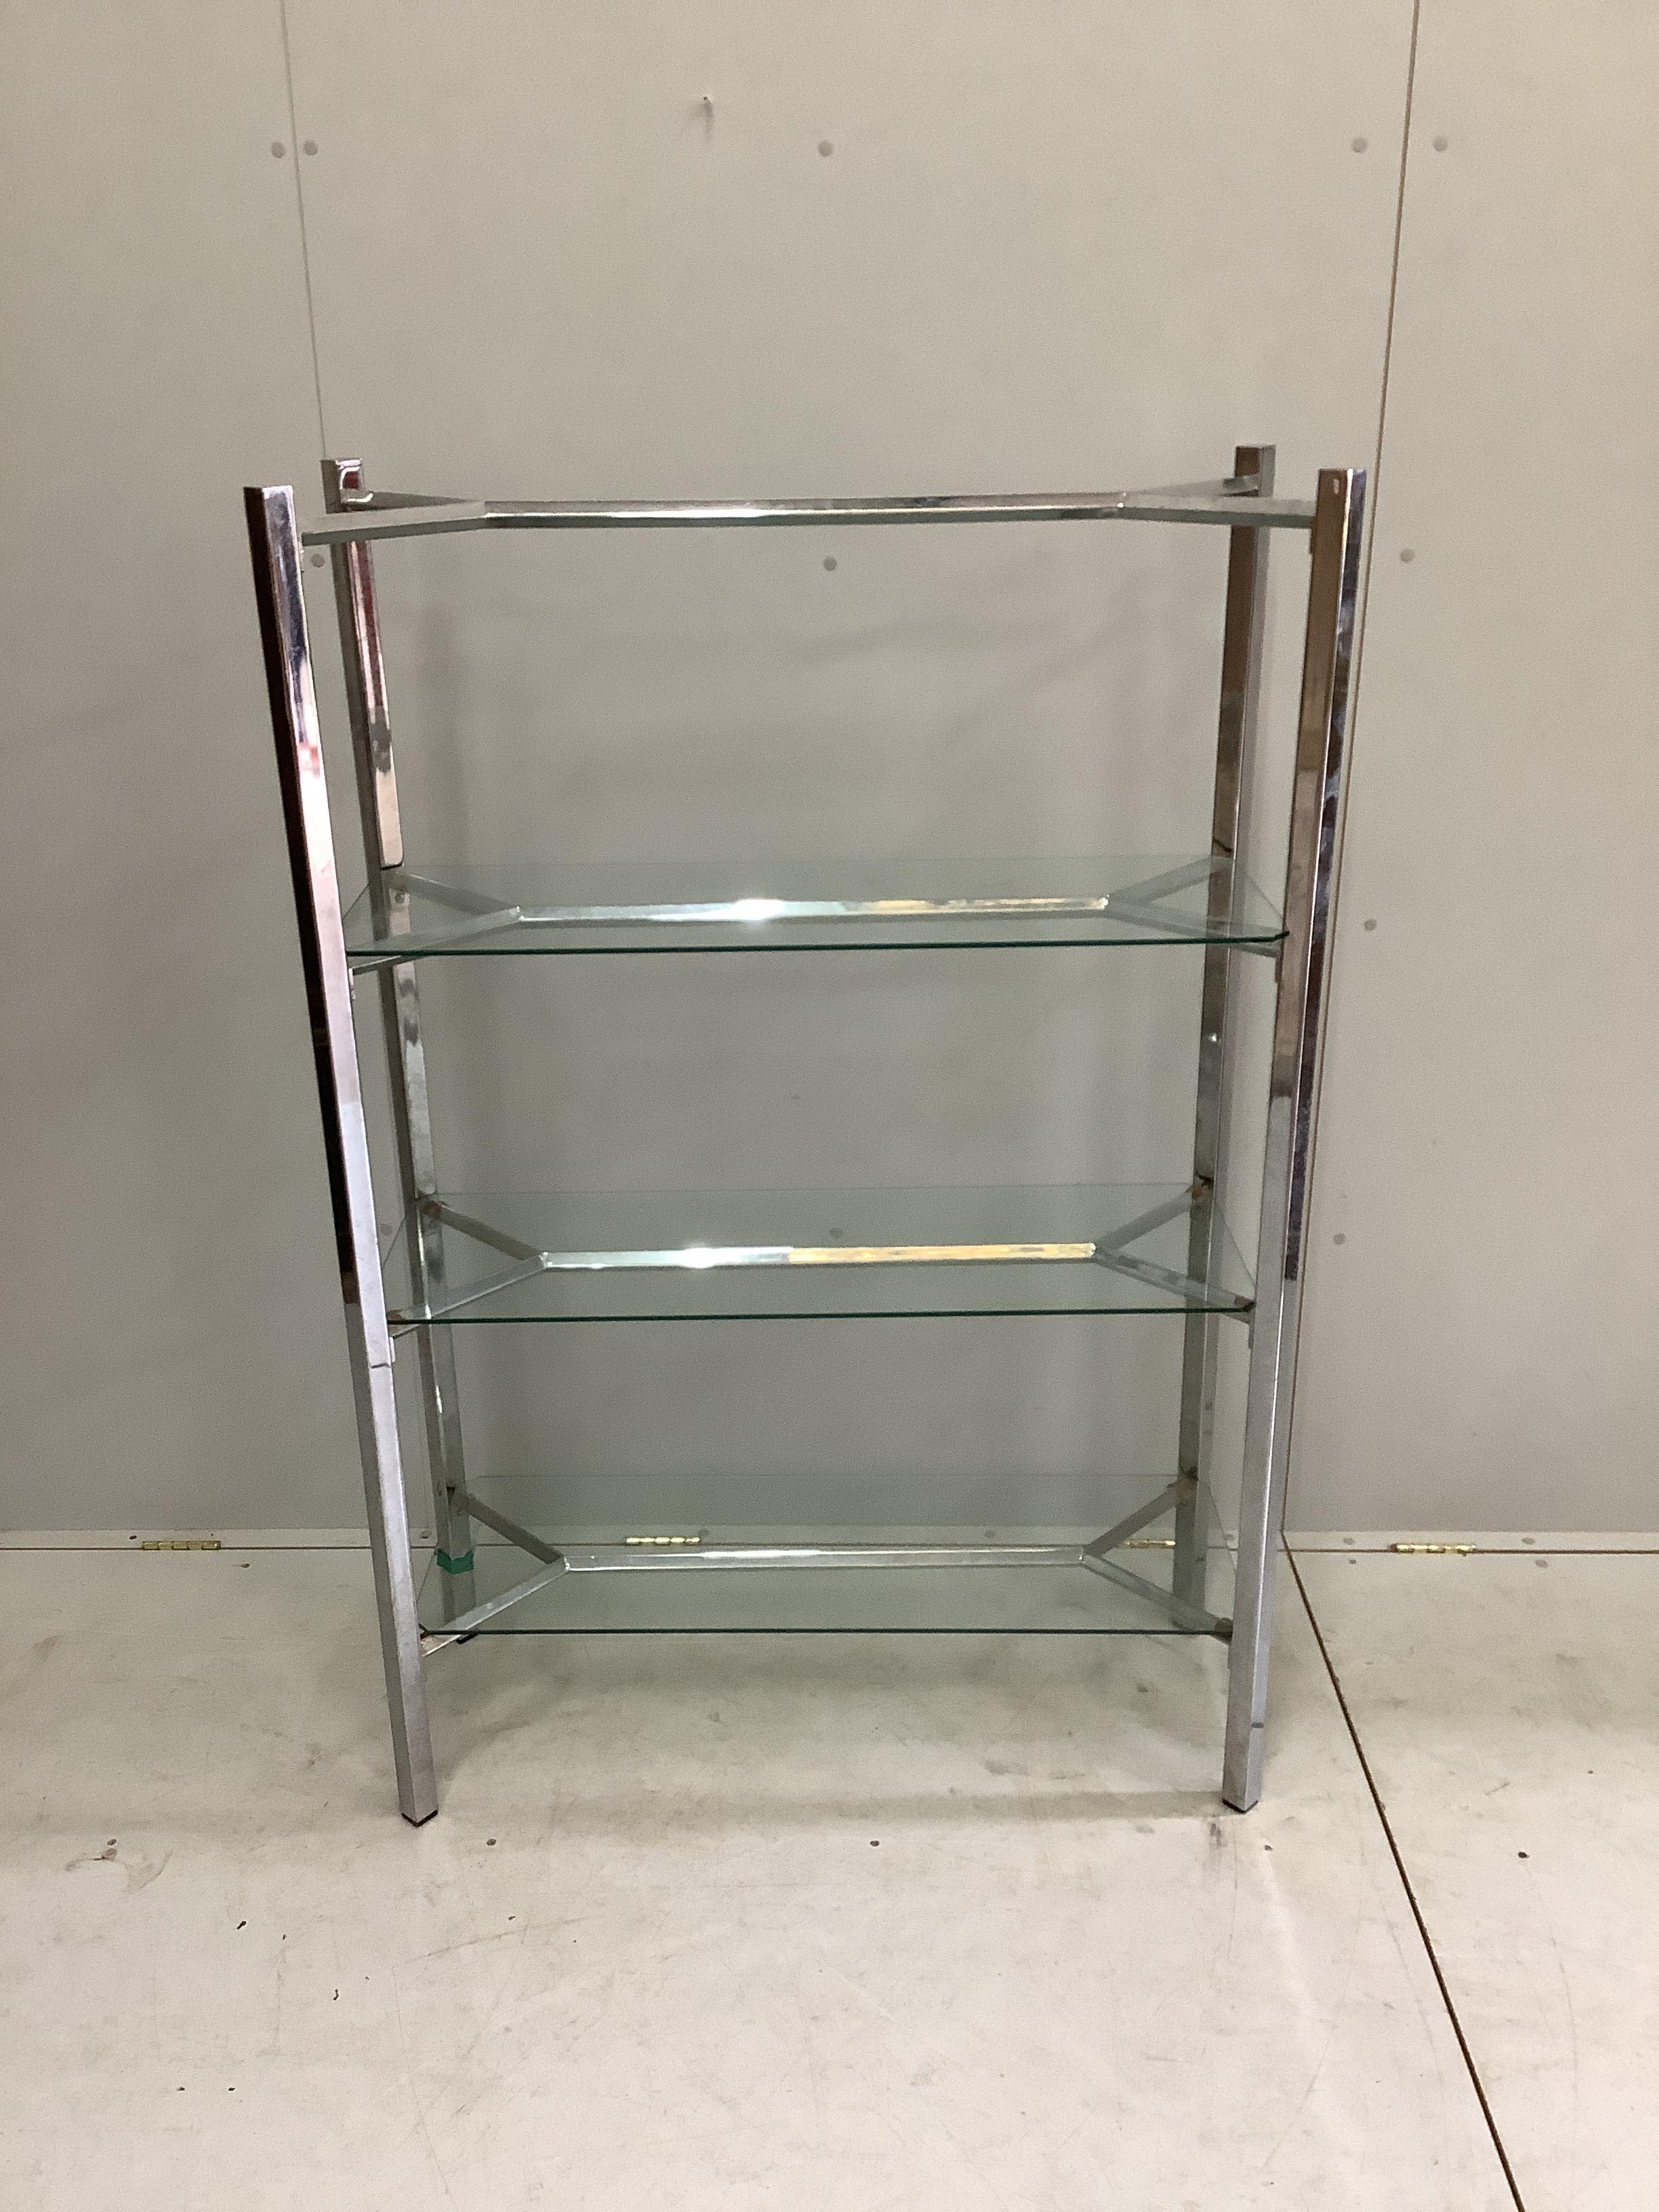 A contemporary chrome and glass three tier shelf unit, width 99cm, depth 38cm, height 147cm. Condition - fair